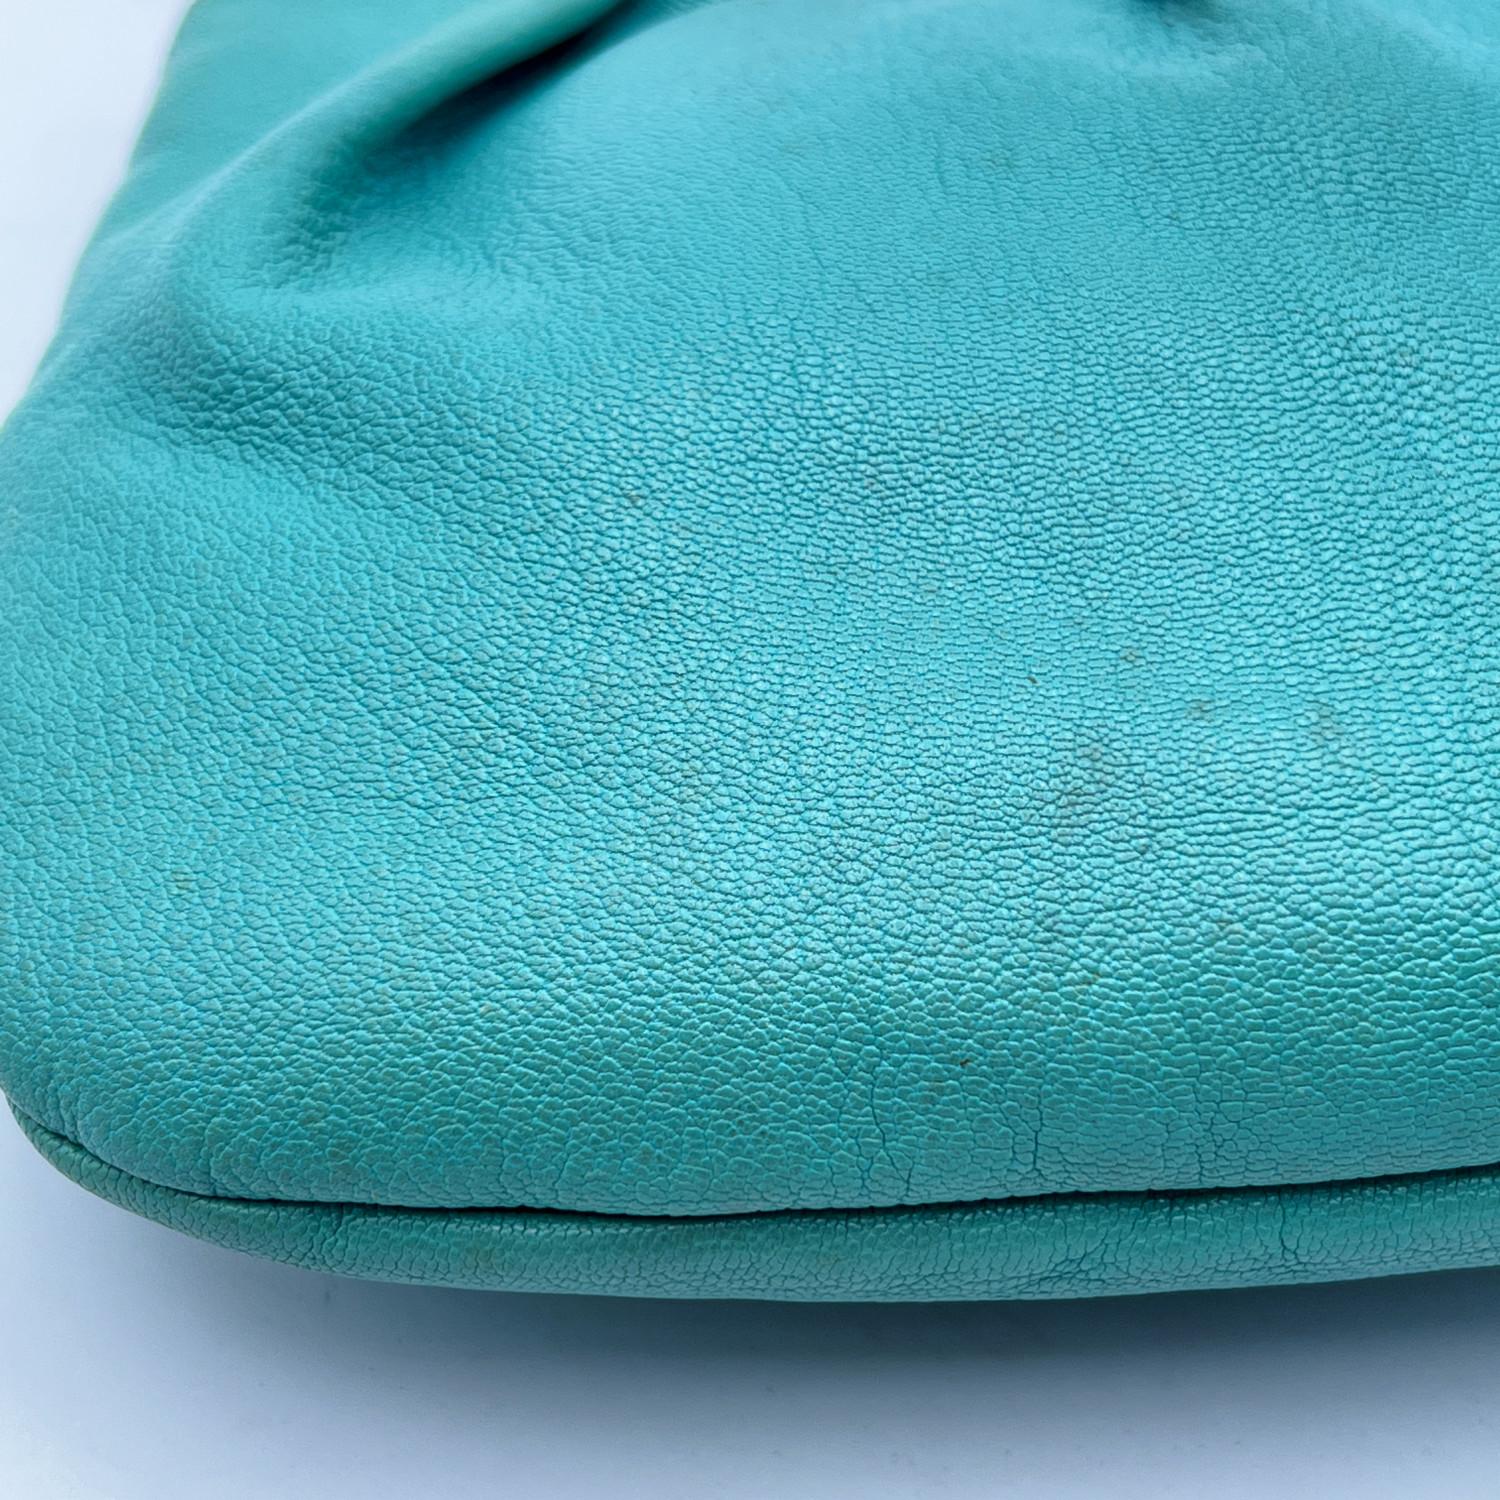 Gucci Turquoise Leather Bamboo Studded Handbag Hobo Bag For Sale 4